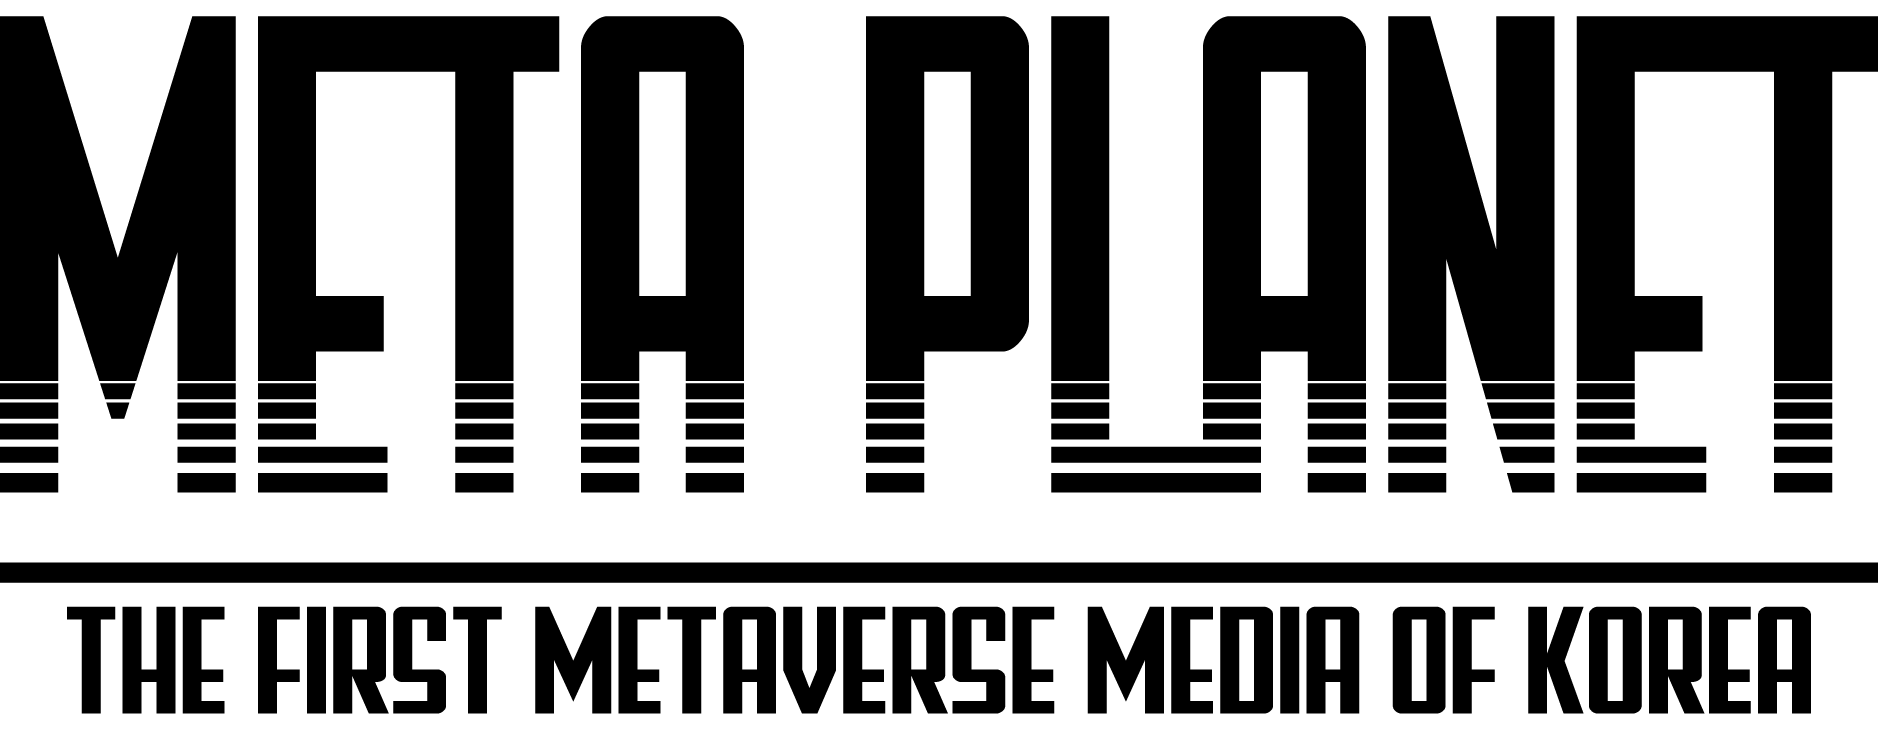 metaplanet logo